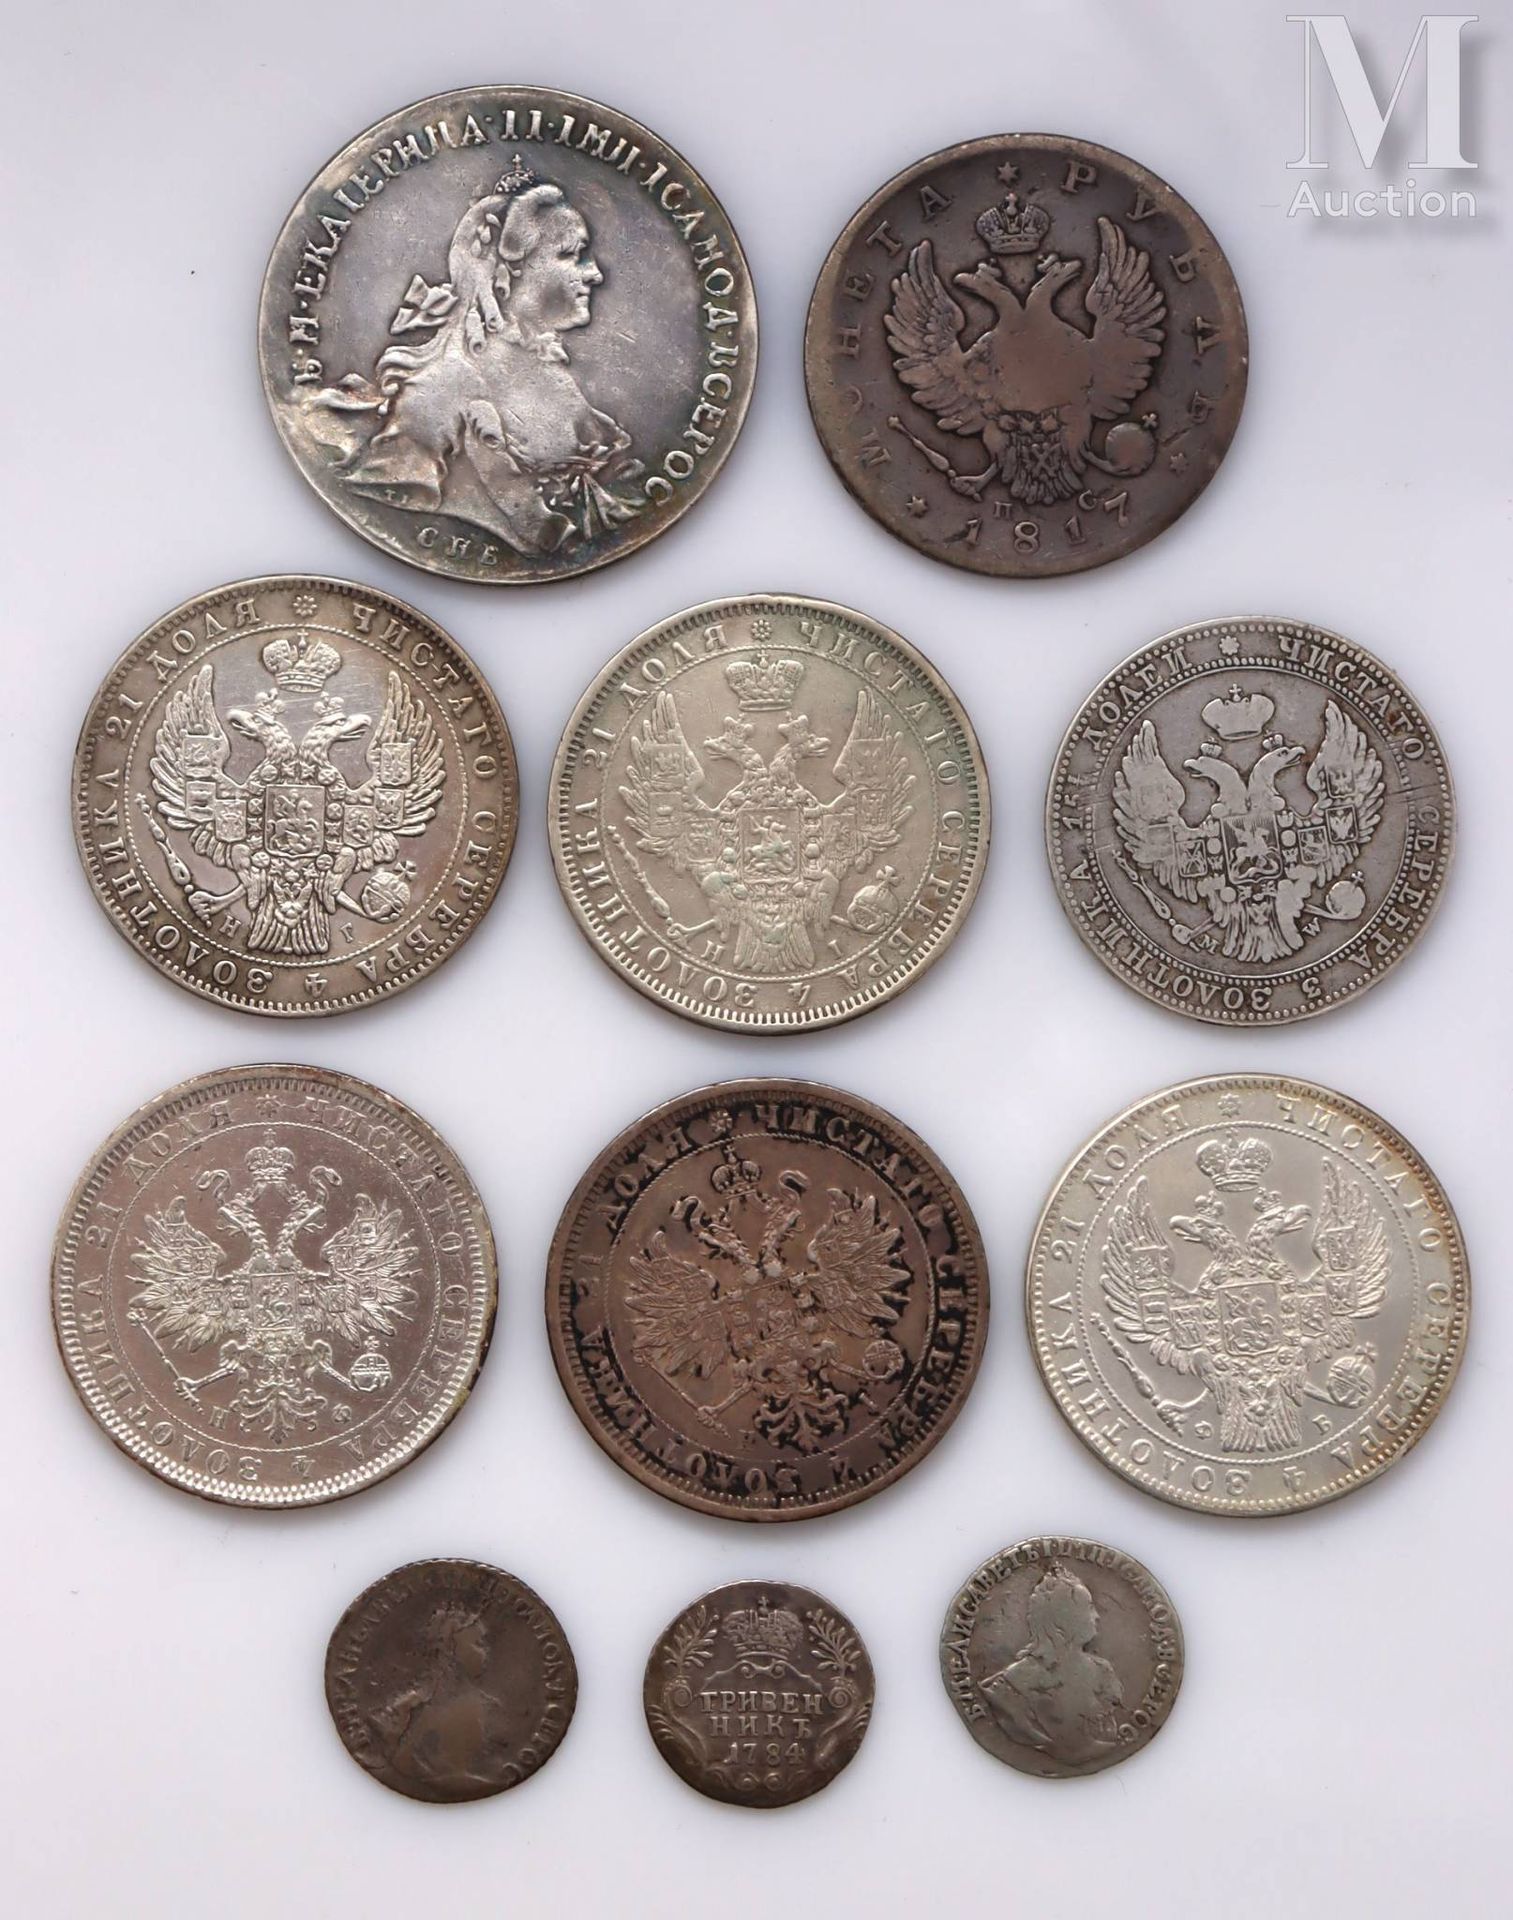 Russie - Divers Lot de onze monnaies comprenant :
-Un rouble de Catherine II 176&hellip;